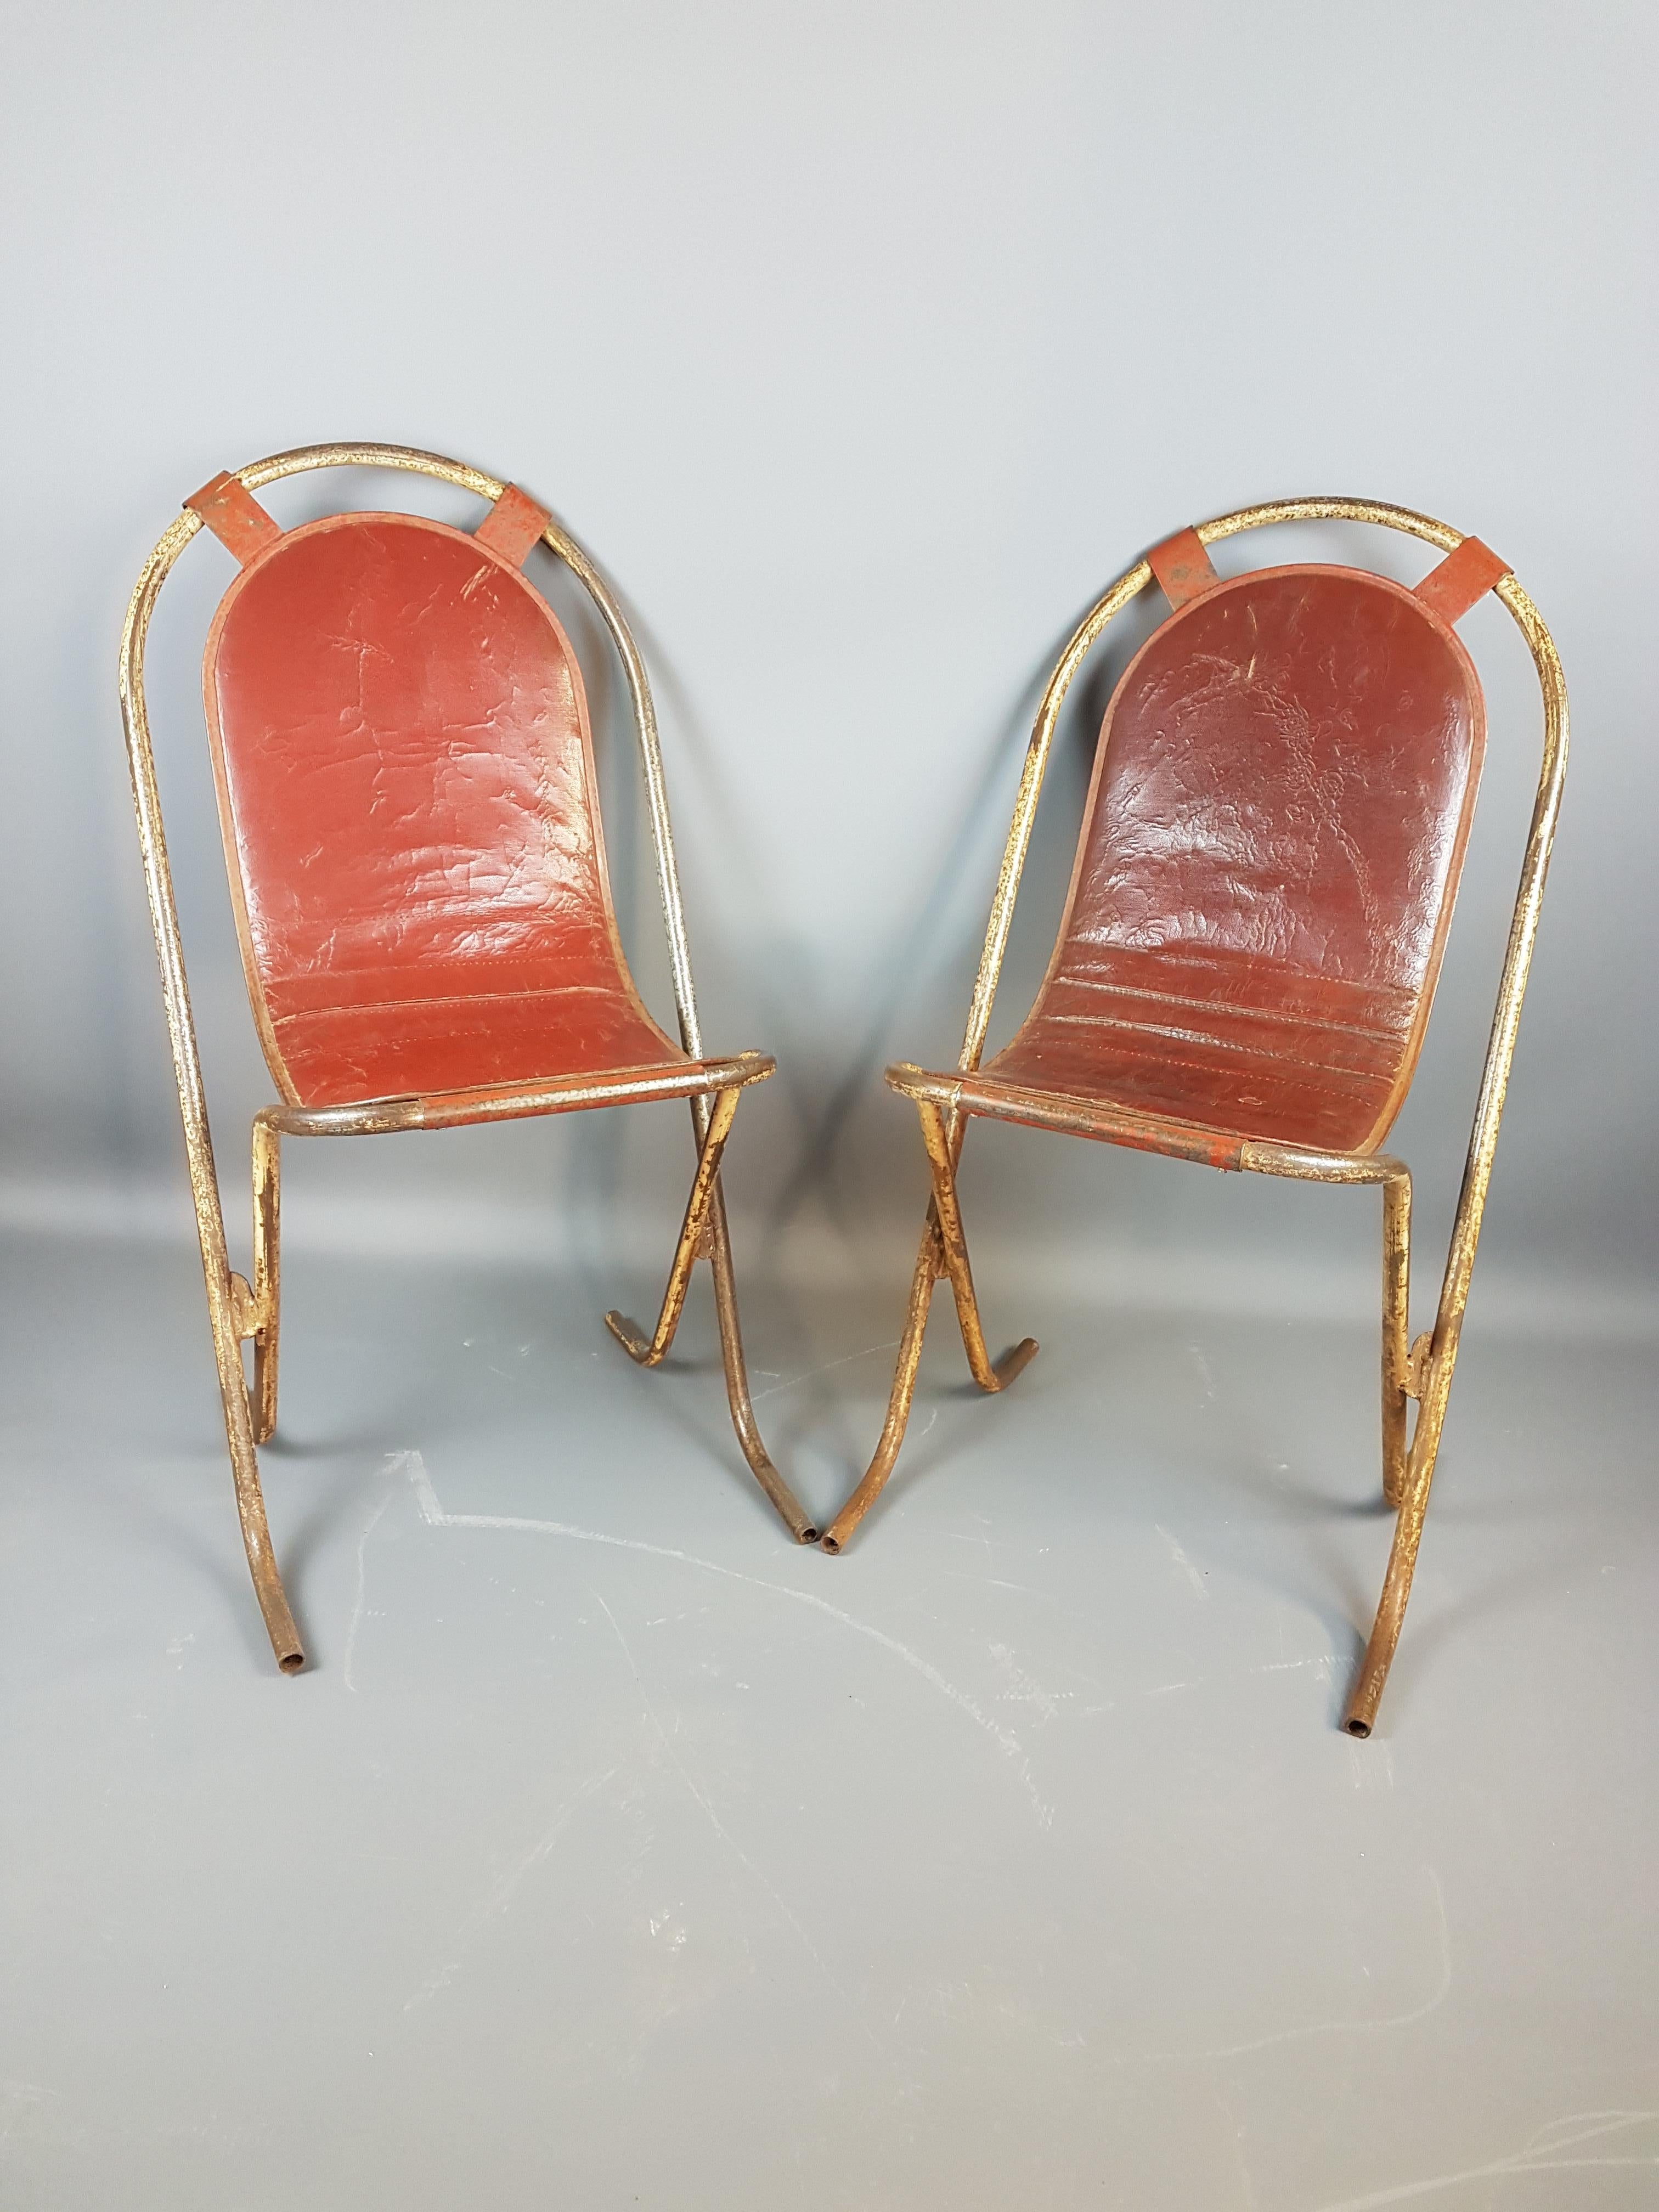 Schönes Paar englischer Stak-a-Bye Metallstühle von Sebel, England. Mit dem ursprünglichen roten rexine gepolsterte Sitze, die Stühle sind in ihrer ursprünglichen Lackierung mit großen Verschleiß Patina der Zeit. Diese Stühle haben die